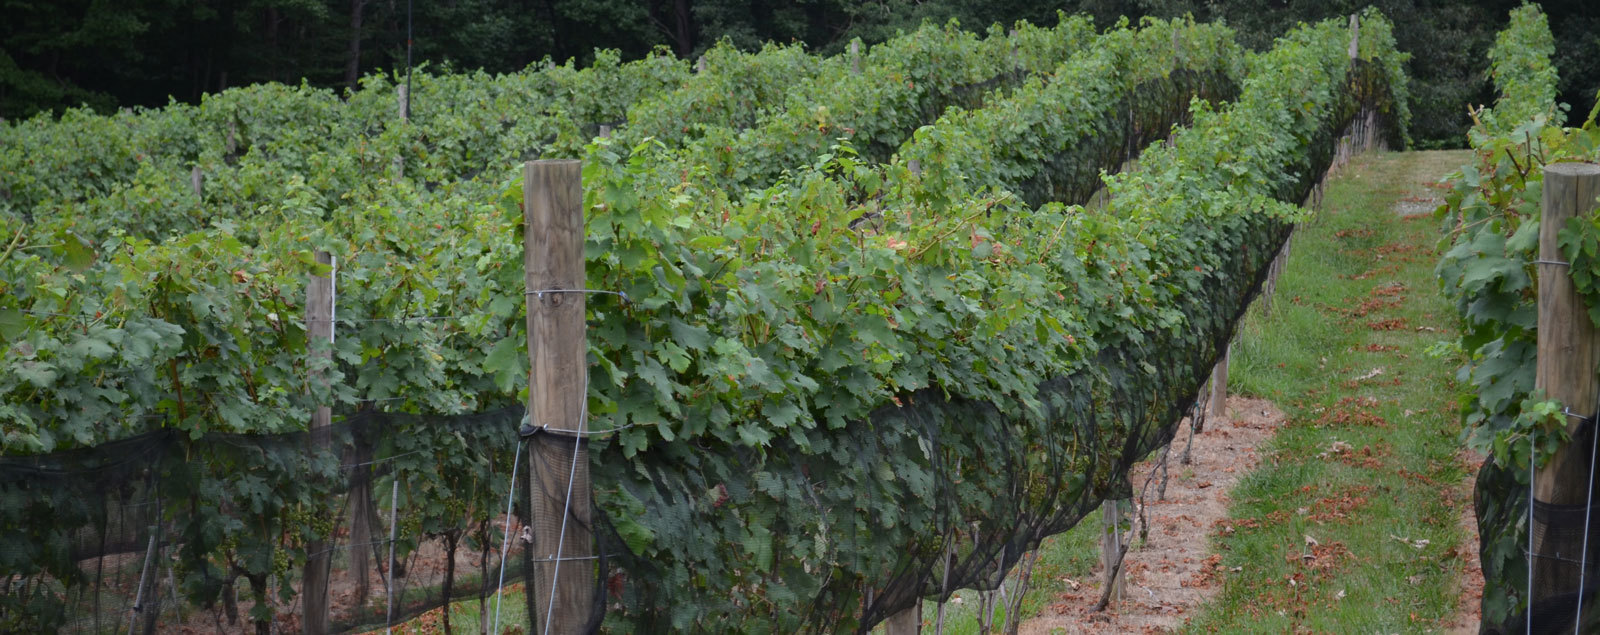 Paradise Springs Winery Vineyard